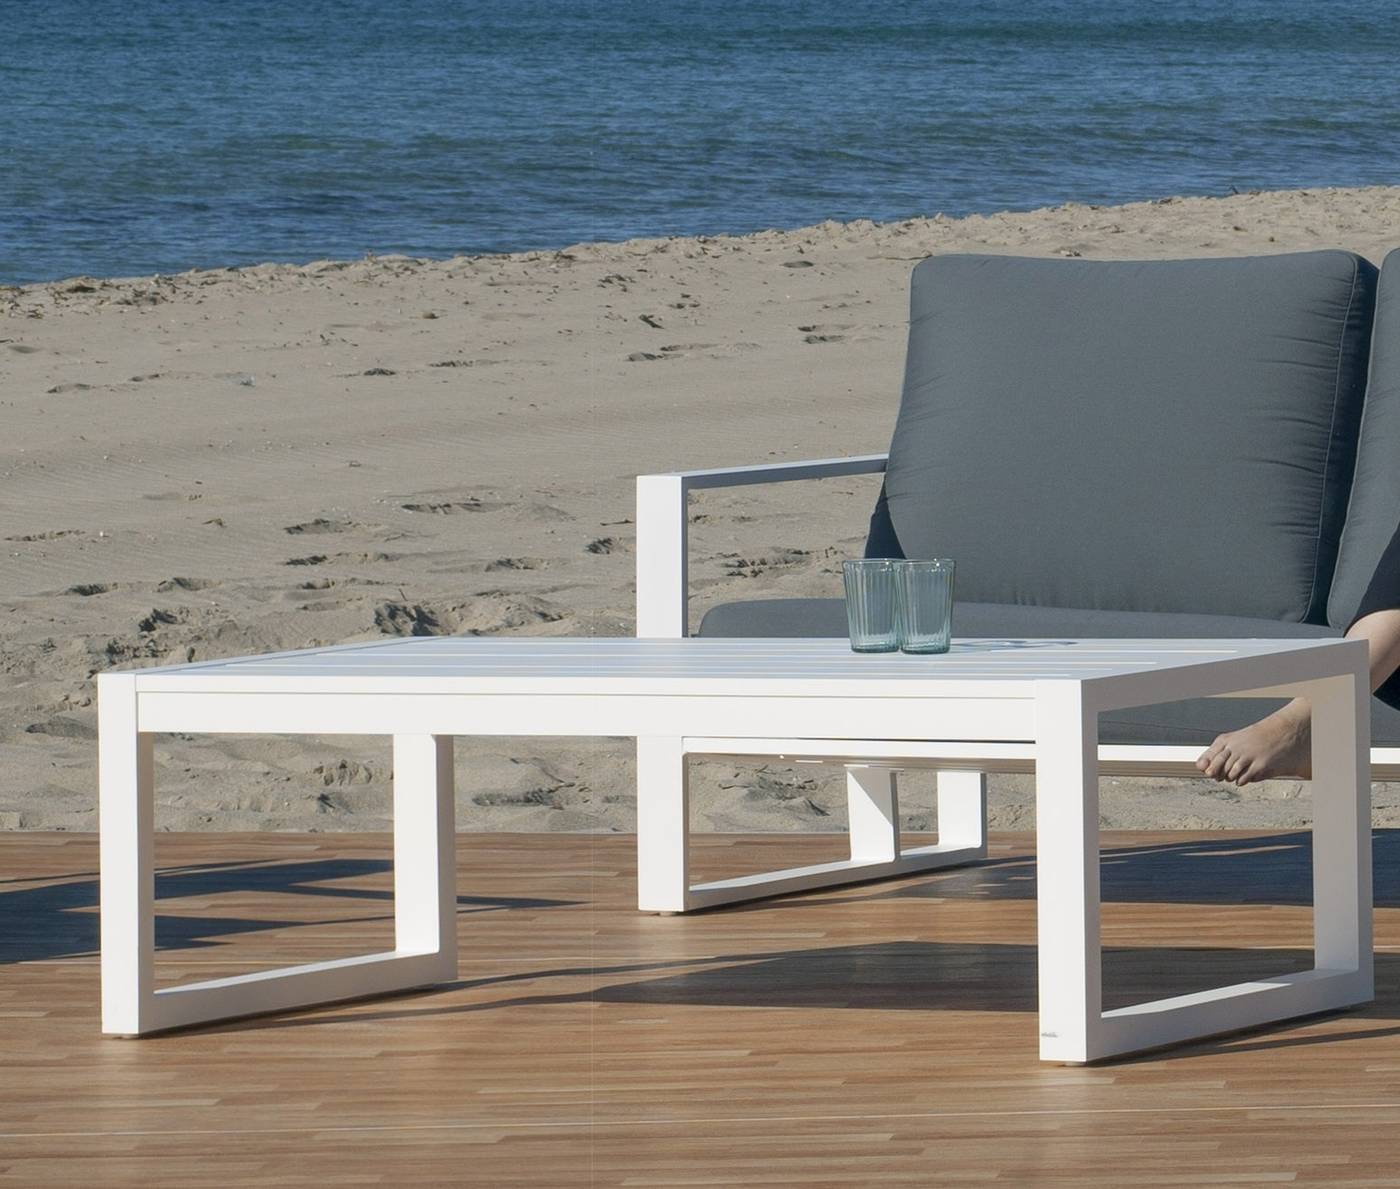 Set Aluminio Sadem-8 - Conjunto aluminio para exterior: sofá 3 plazas + 2 sillones + mesa de centro. Fabricado de aluminio en color blanco, antracita, champagne, plata o marrón.